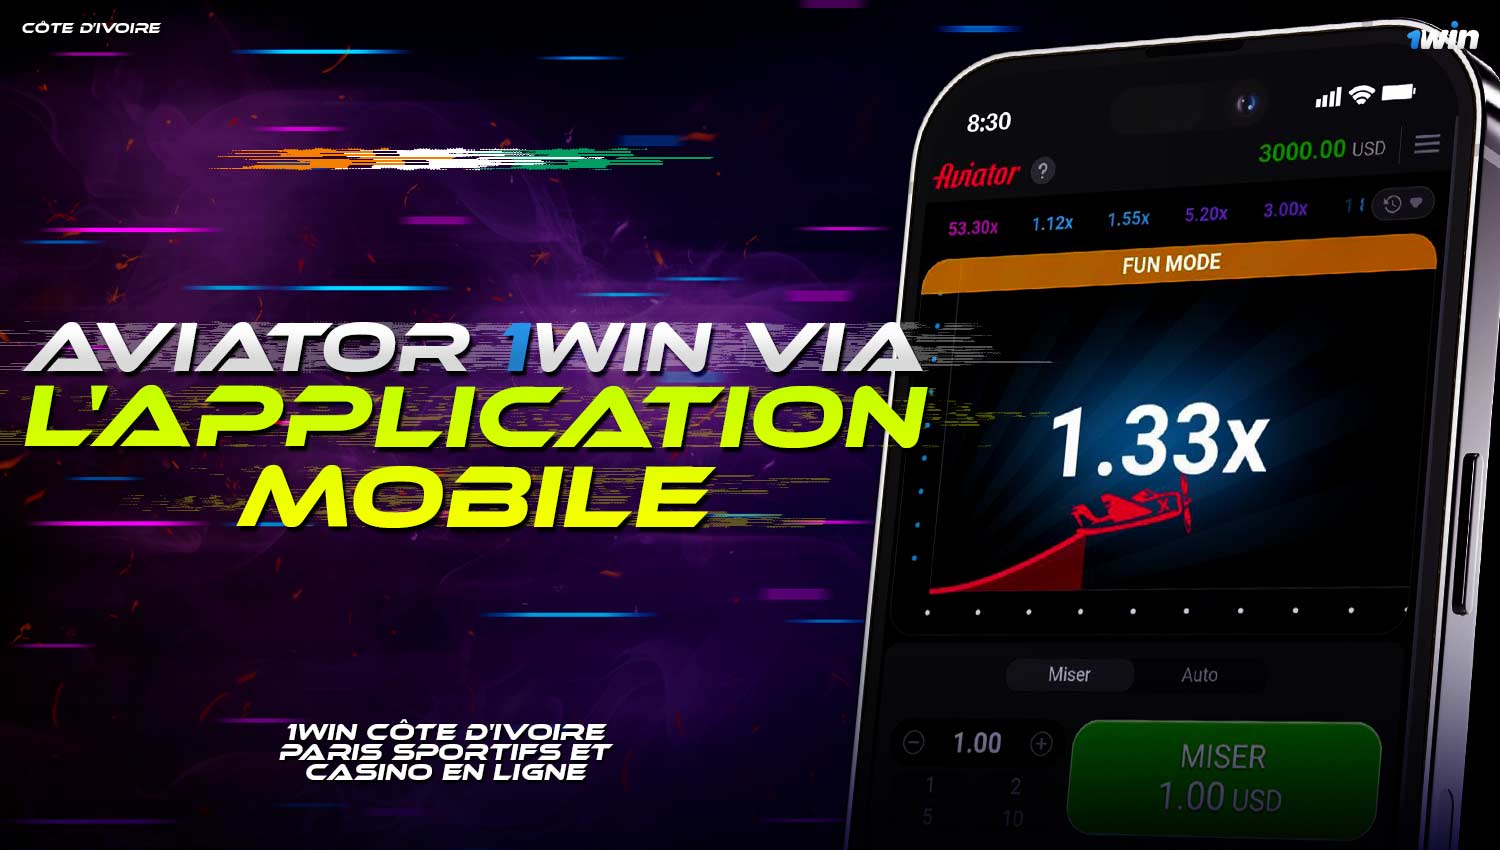 Dans l'application mobile 1win, le jeu Aviator est disponible avec les mêmes fonctionnalités que sur le site 1win.